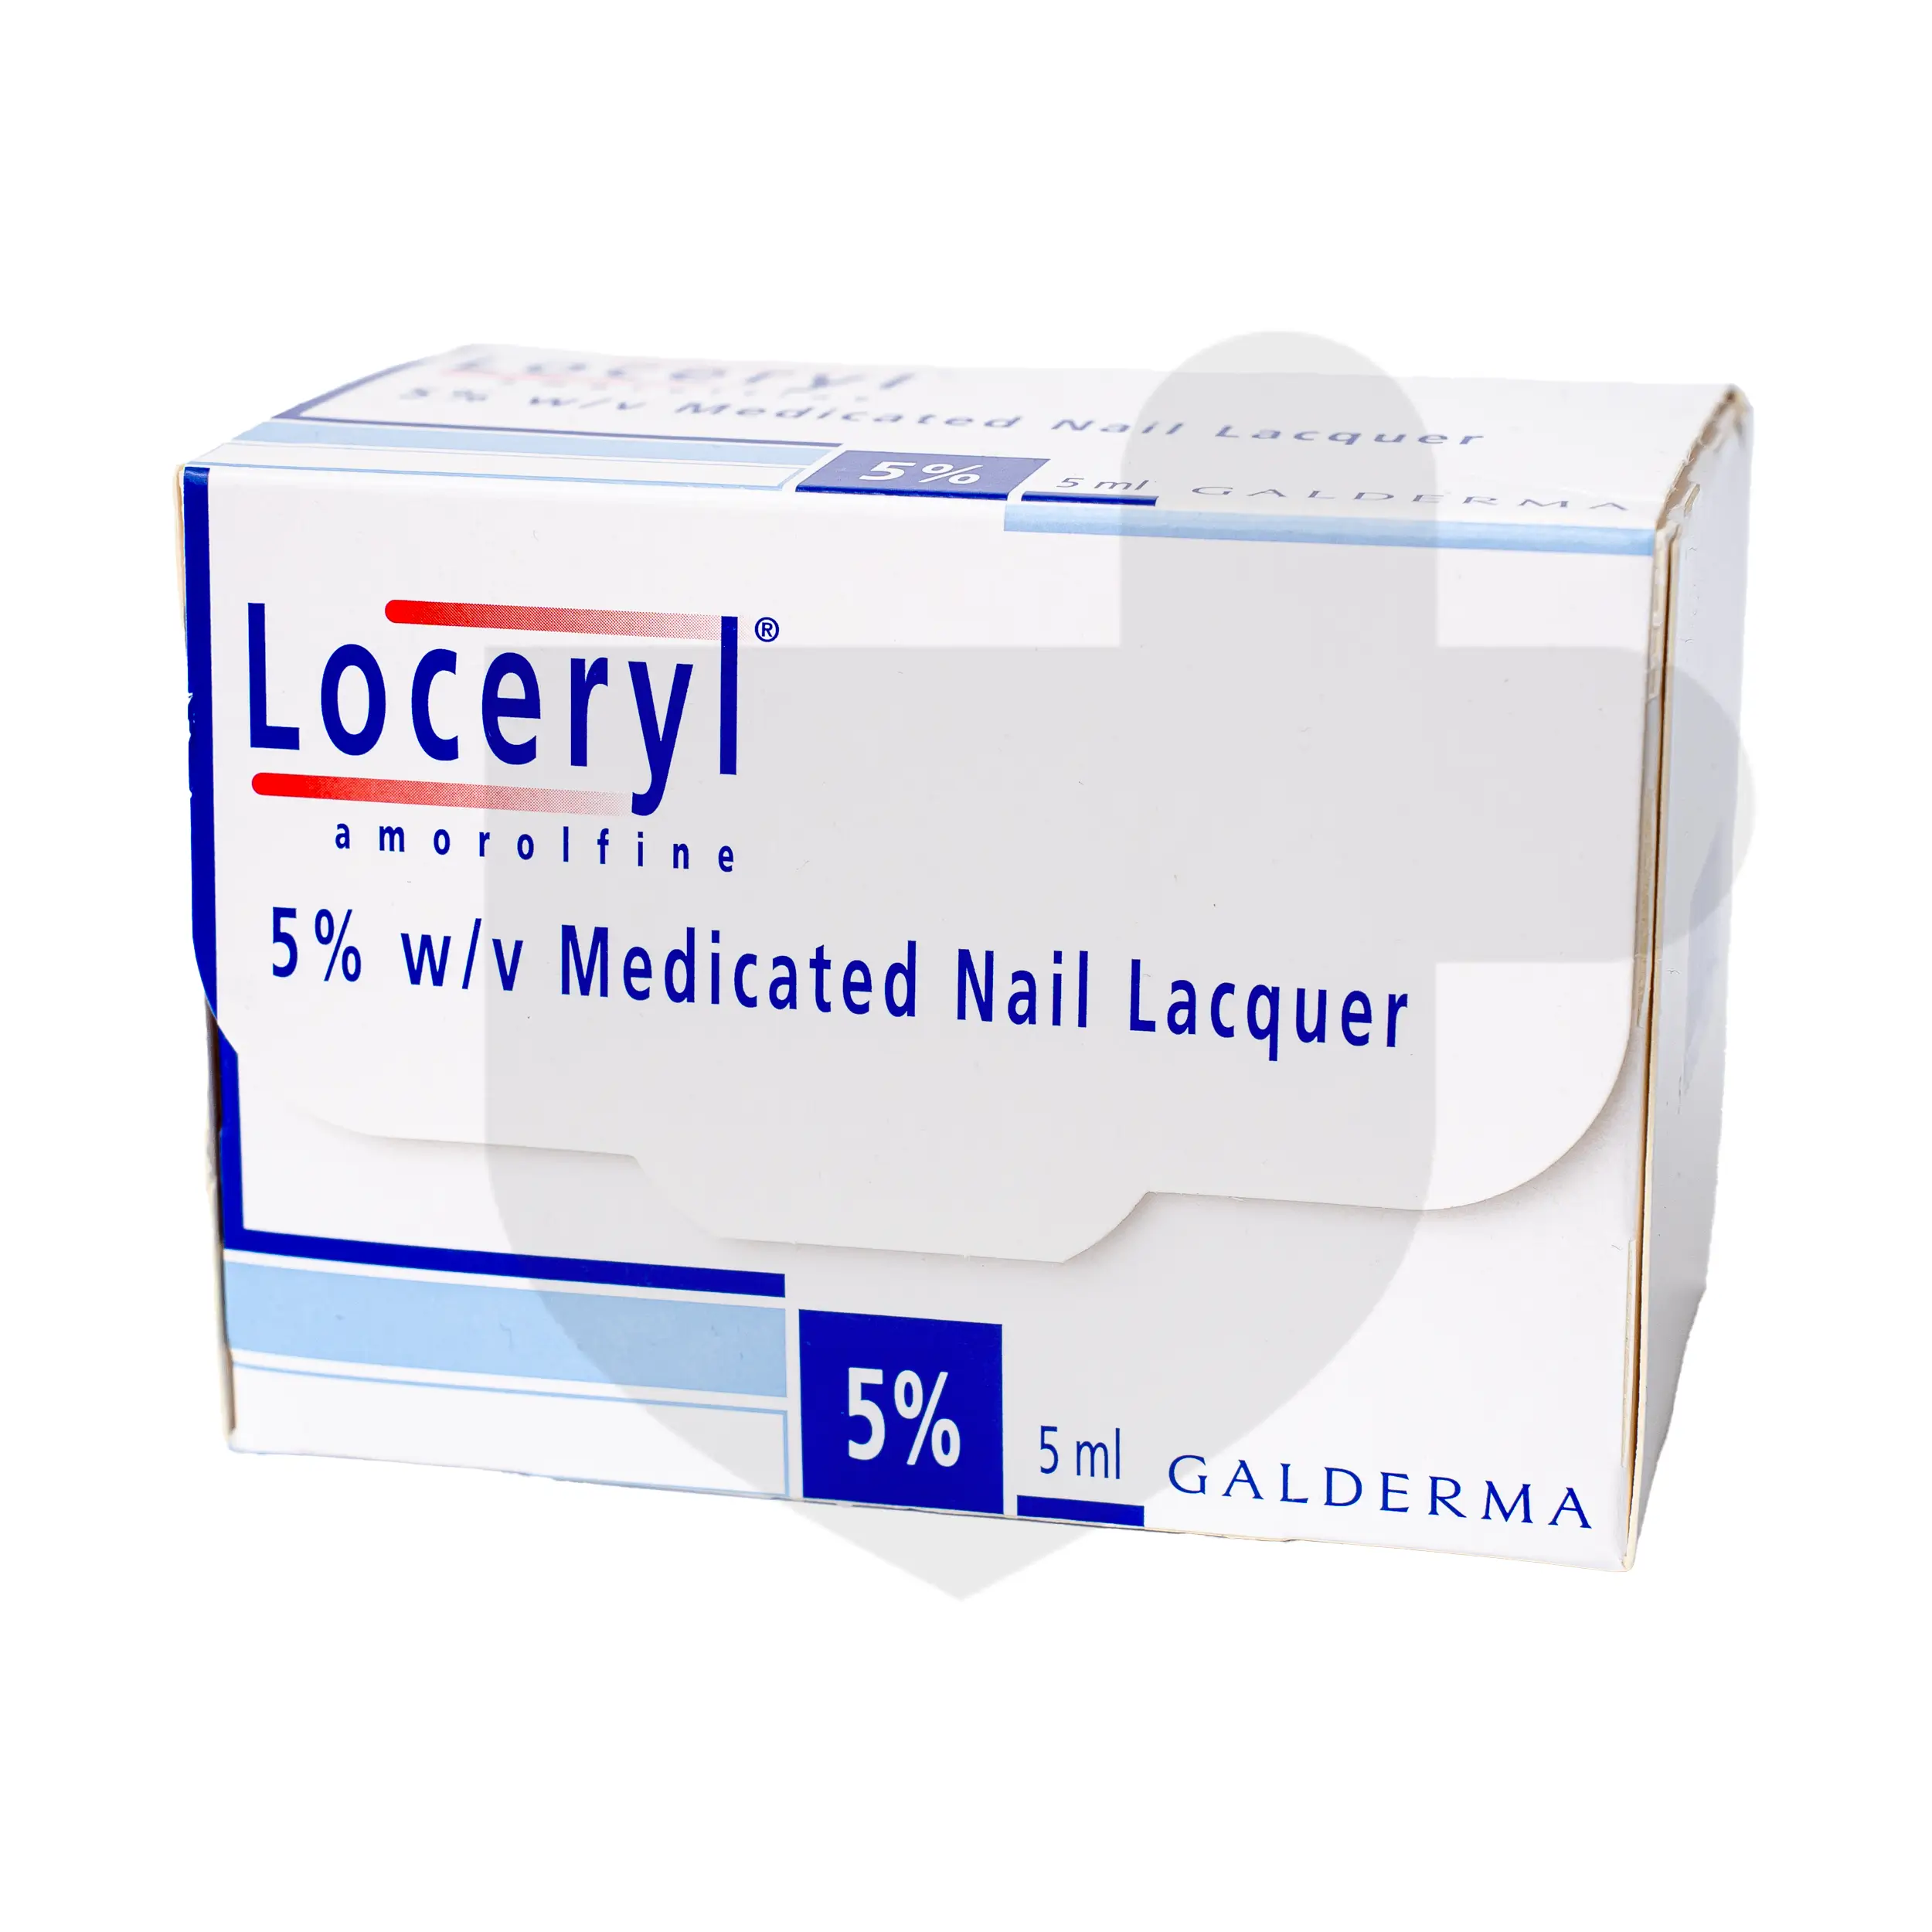 Loceryl Nail kuku lacquer anti fungal 5% 2.5ml x 30 exp 5/2025 | Lazada